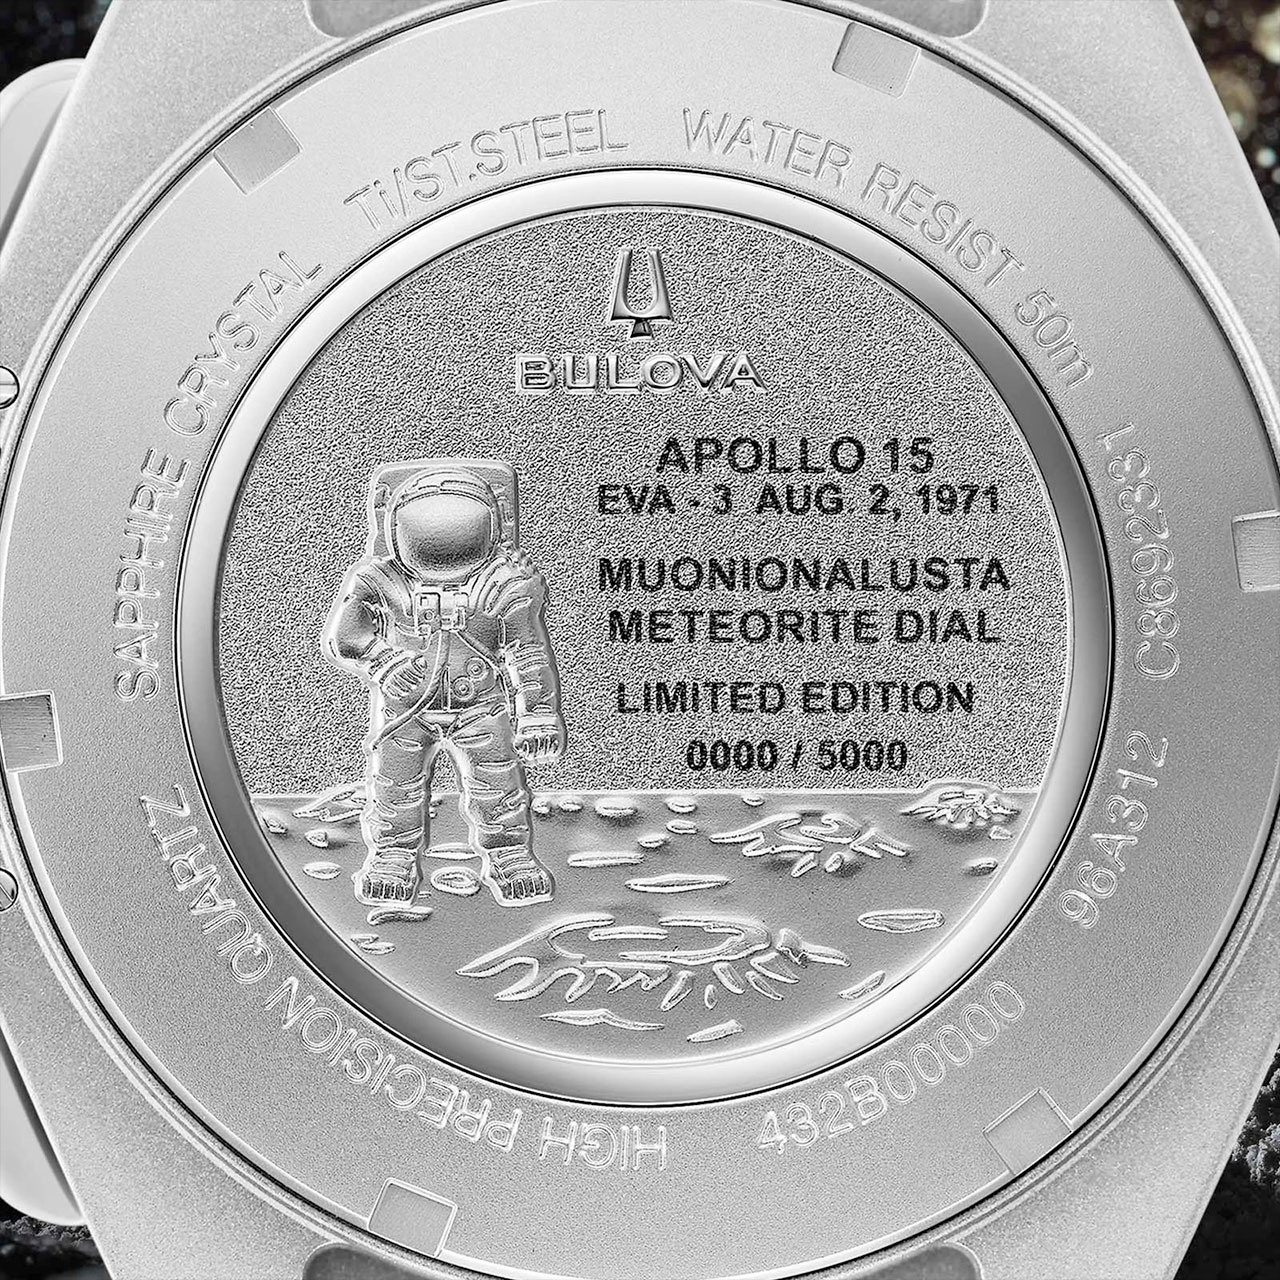 primo piano del retro metallico argentato di un orologio, che mostra un'incisione di un astronauta sulla superficie della luna.